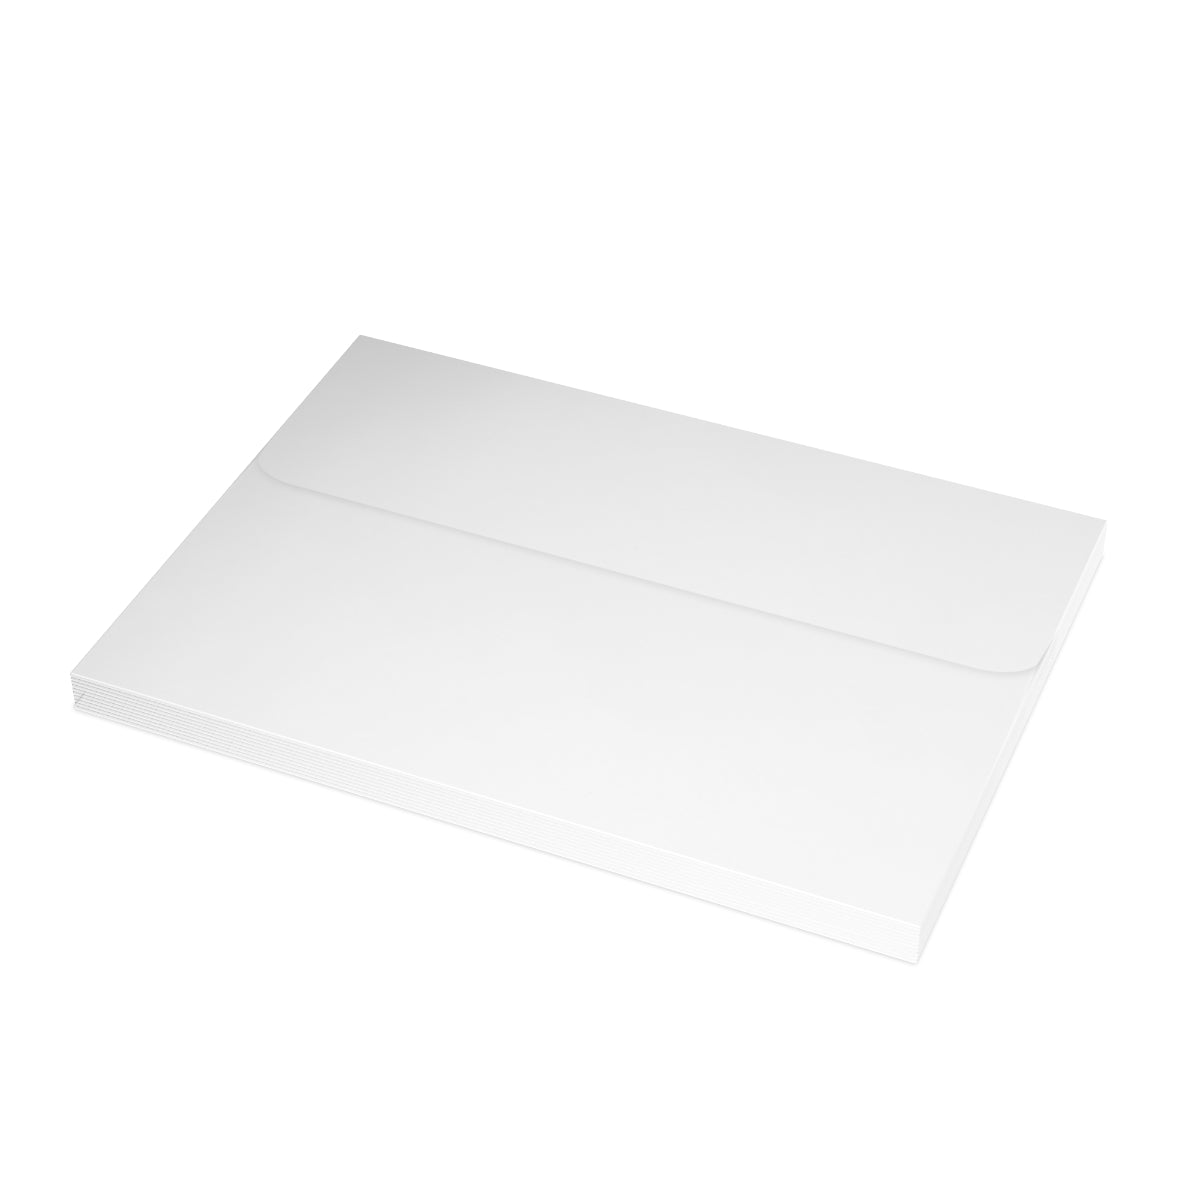 Stockholm Folded Matte Notecards + Envelopes (10pcs)